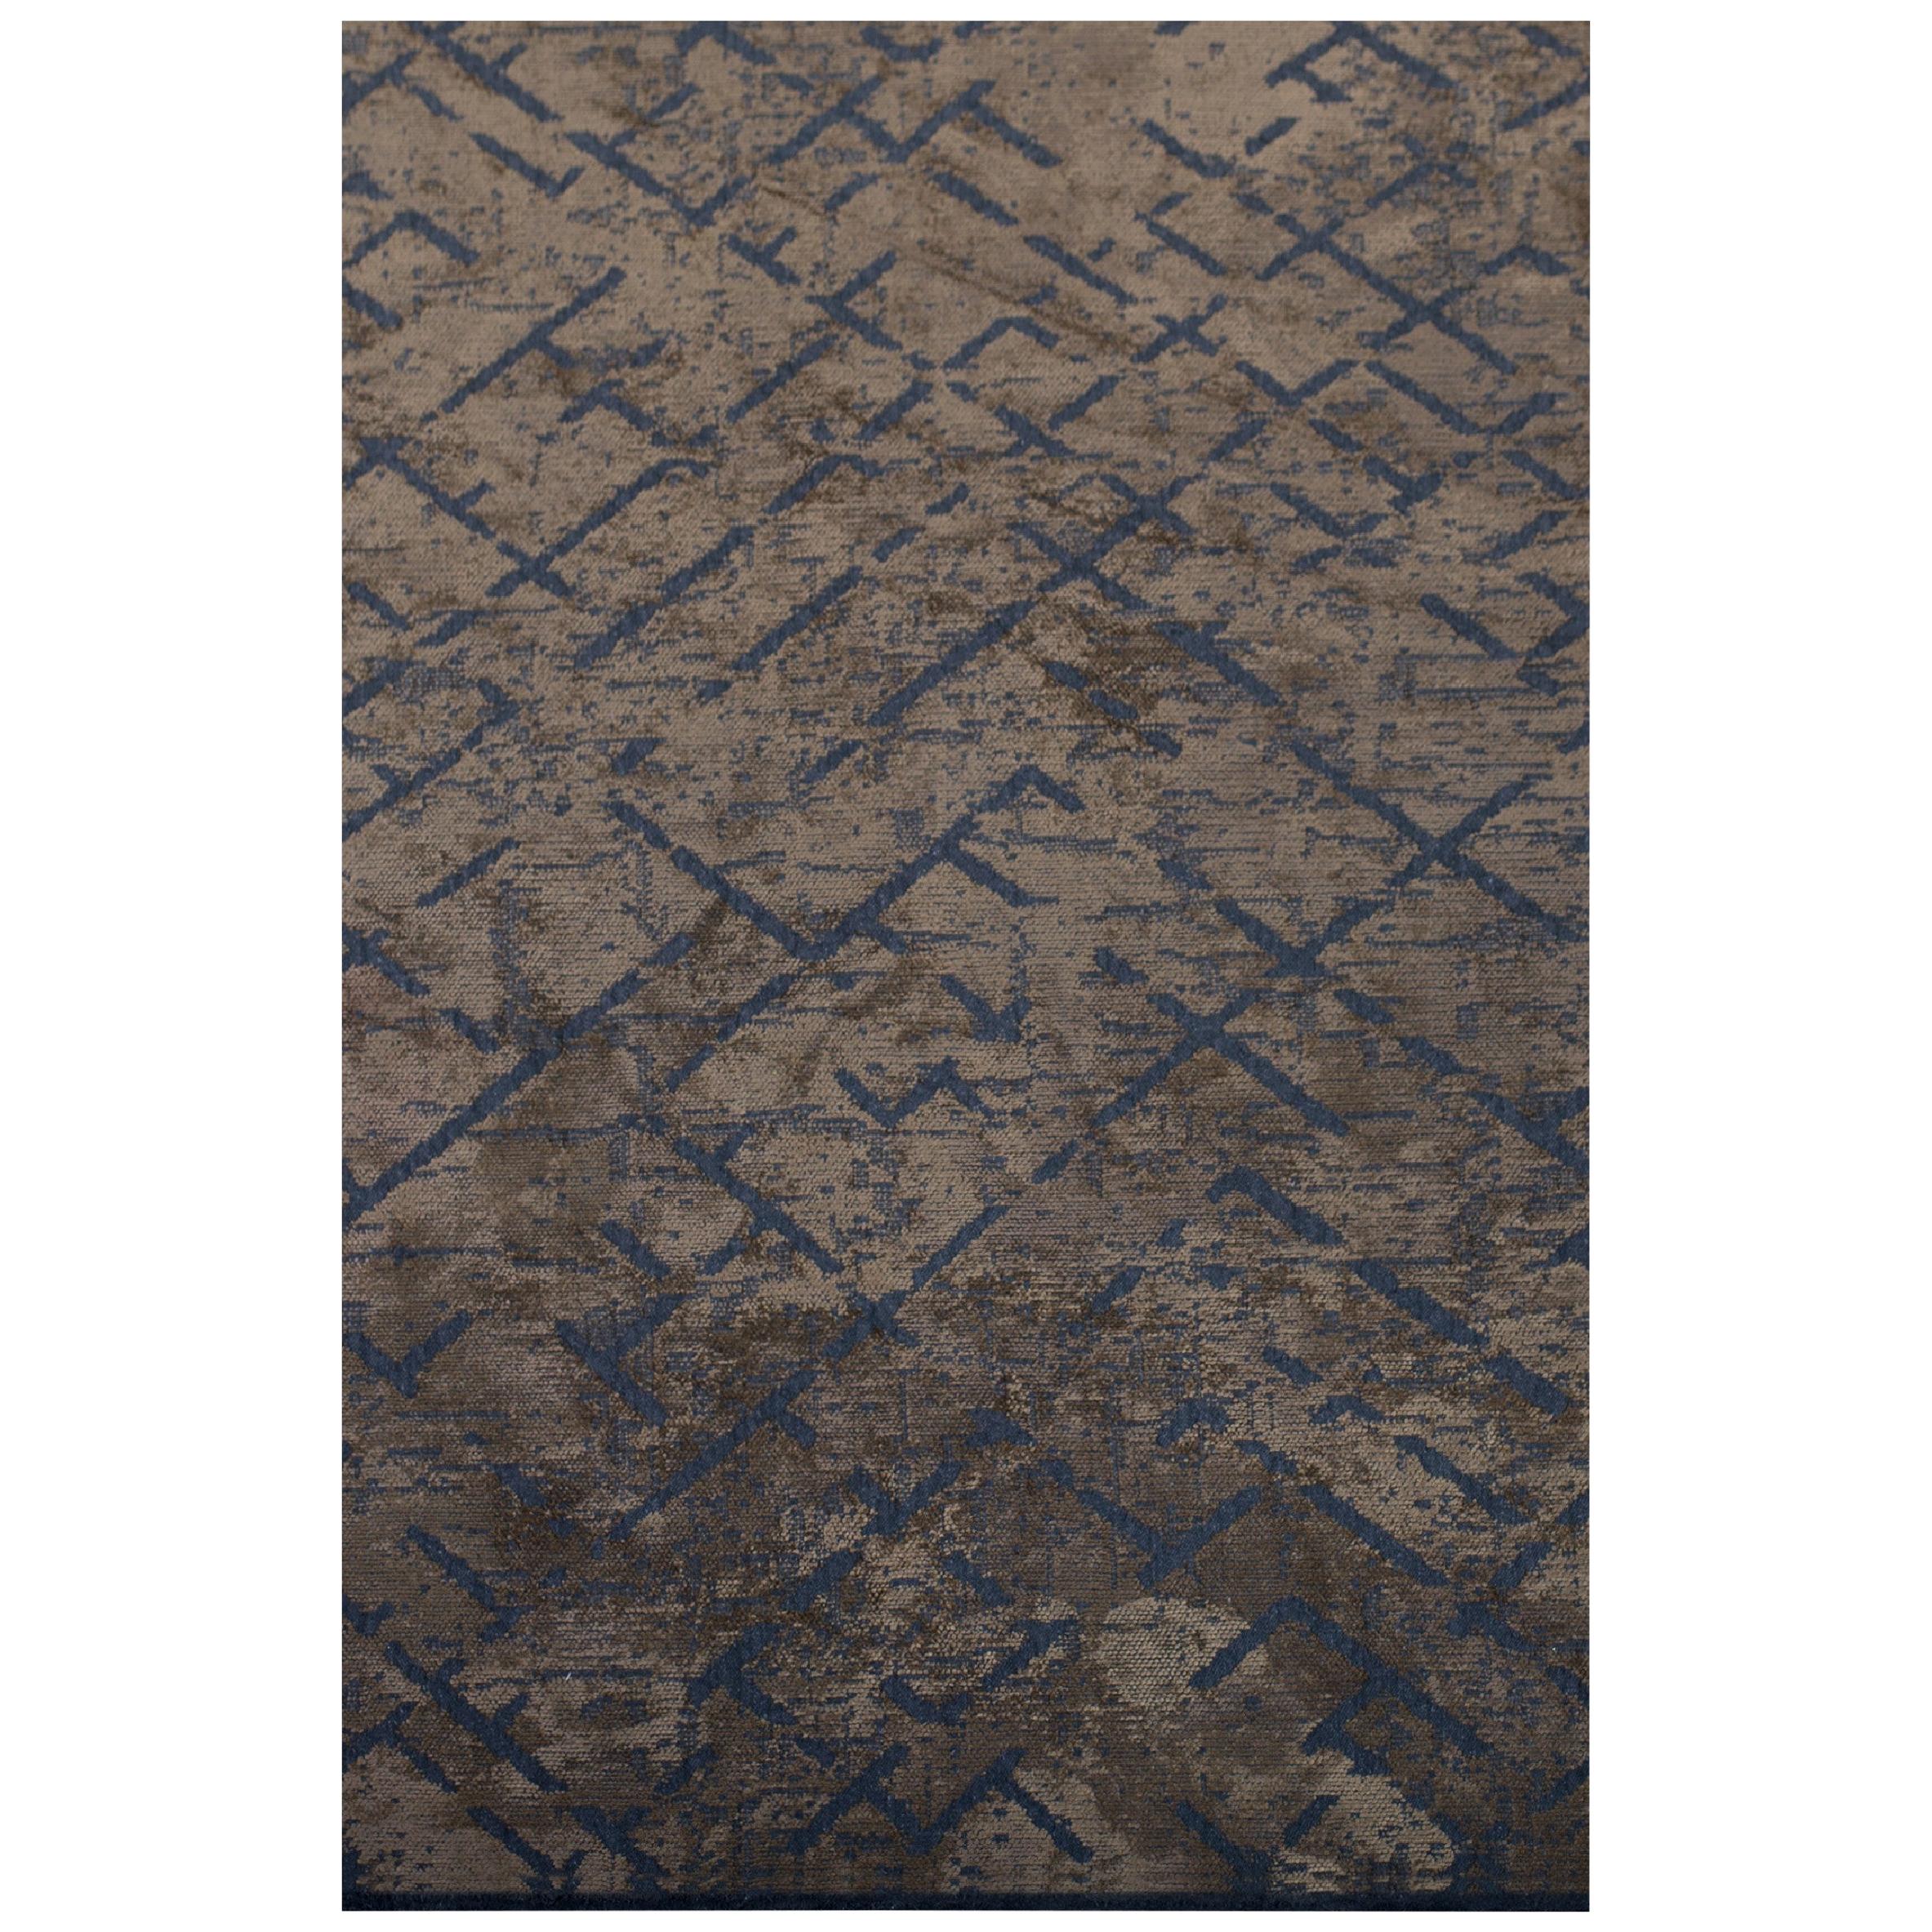 Zeitgenössischer, weicher Semi-Plüsch-Teppich in Nerzbraun und Blau mit abstraktem Muster